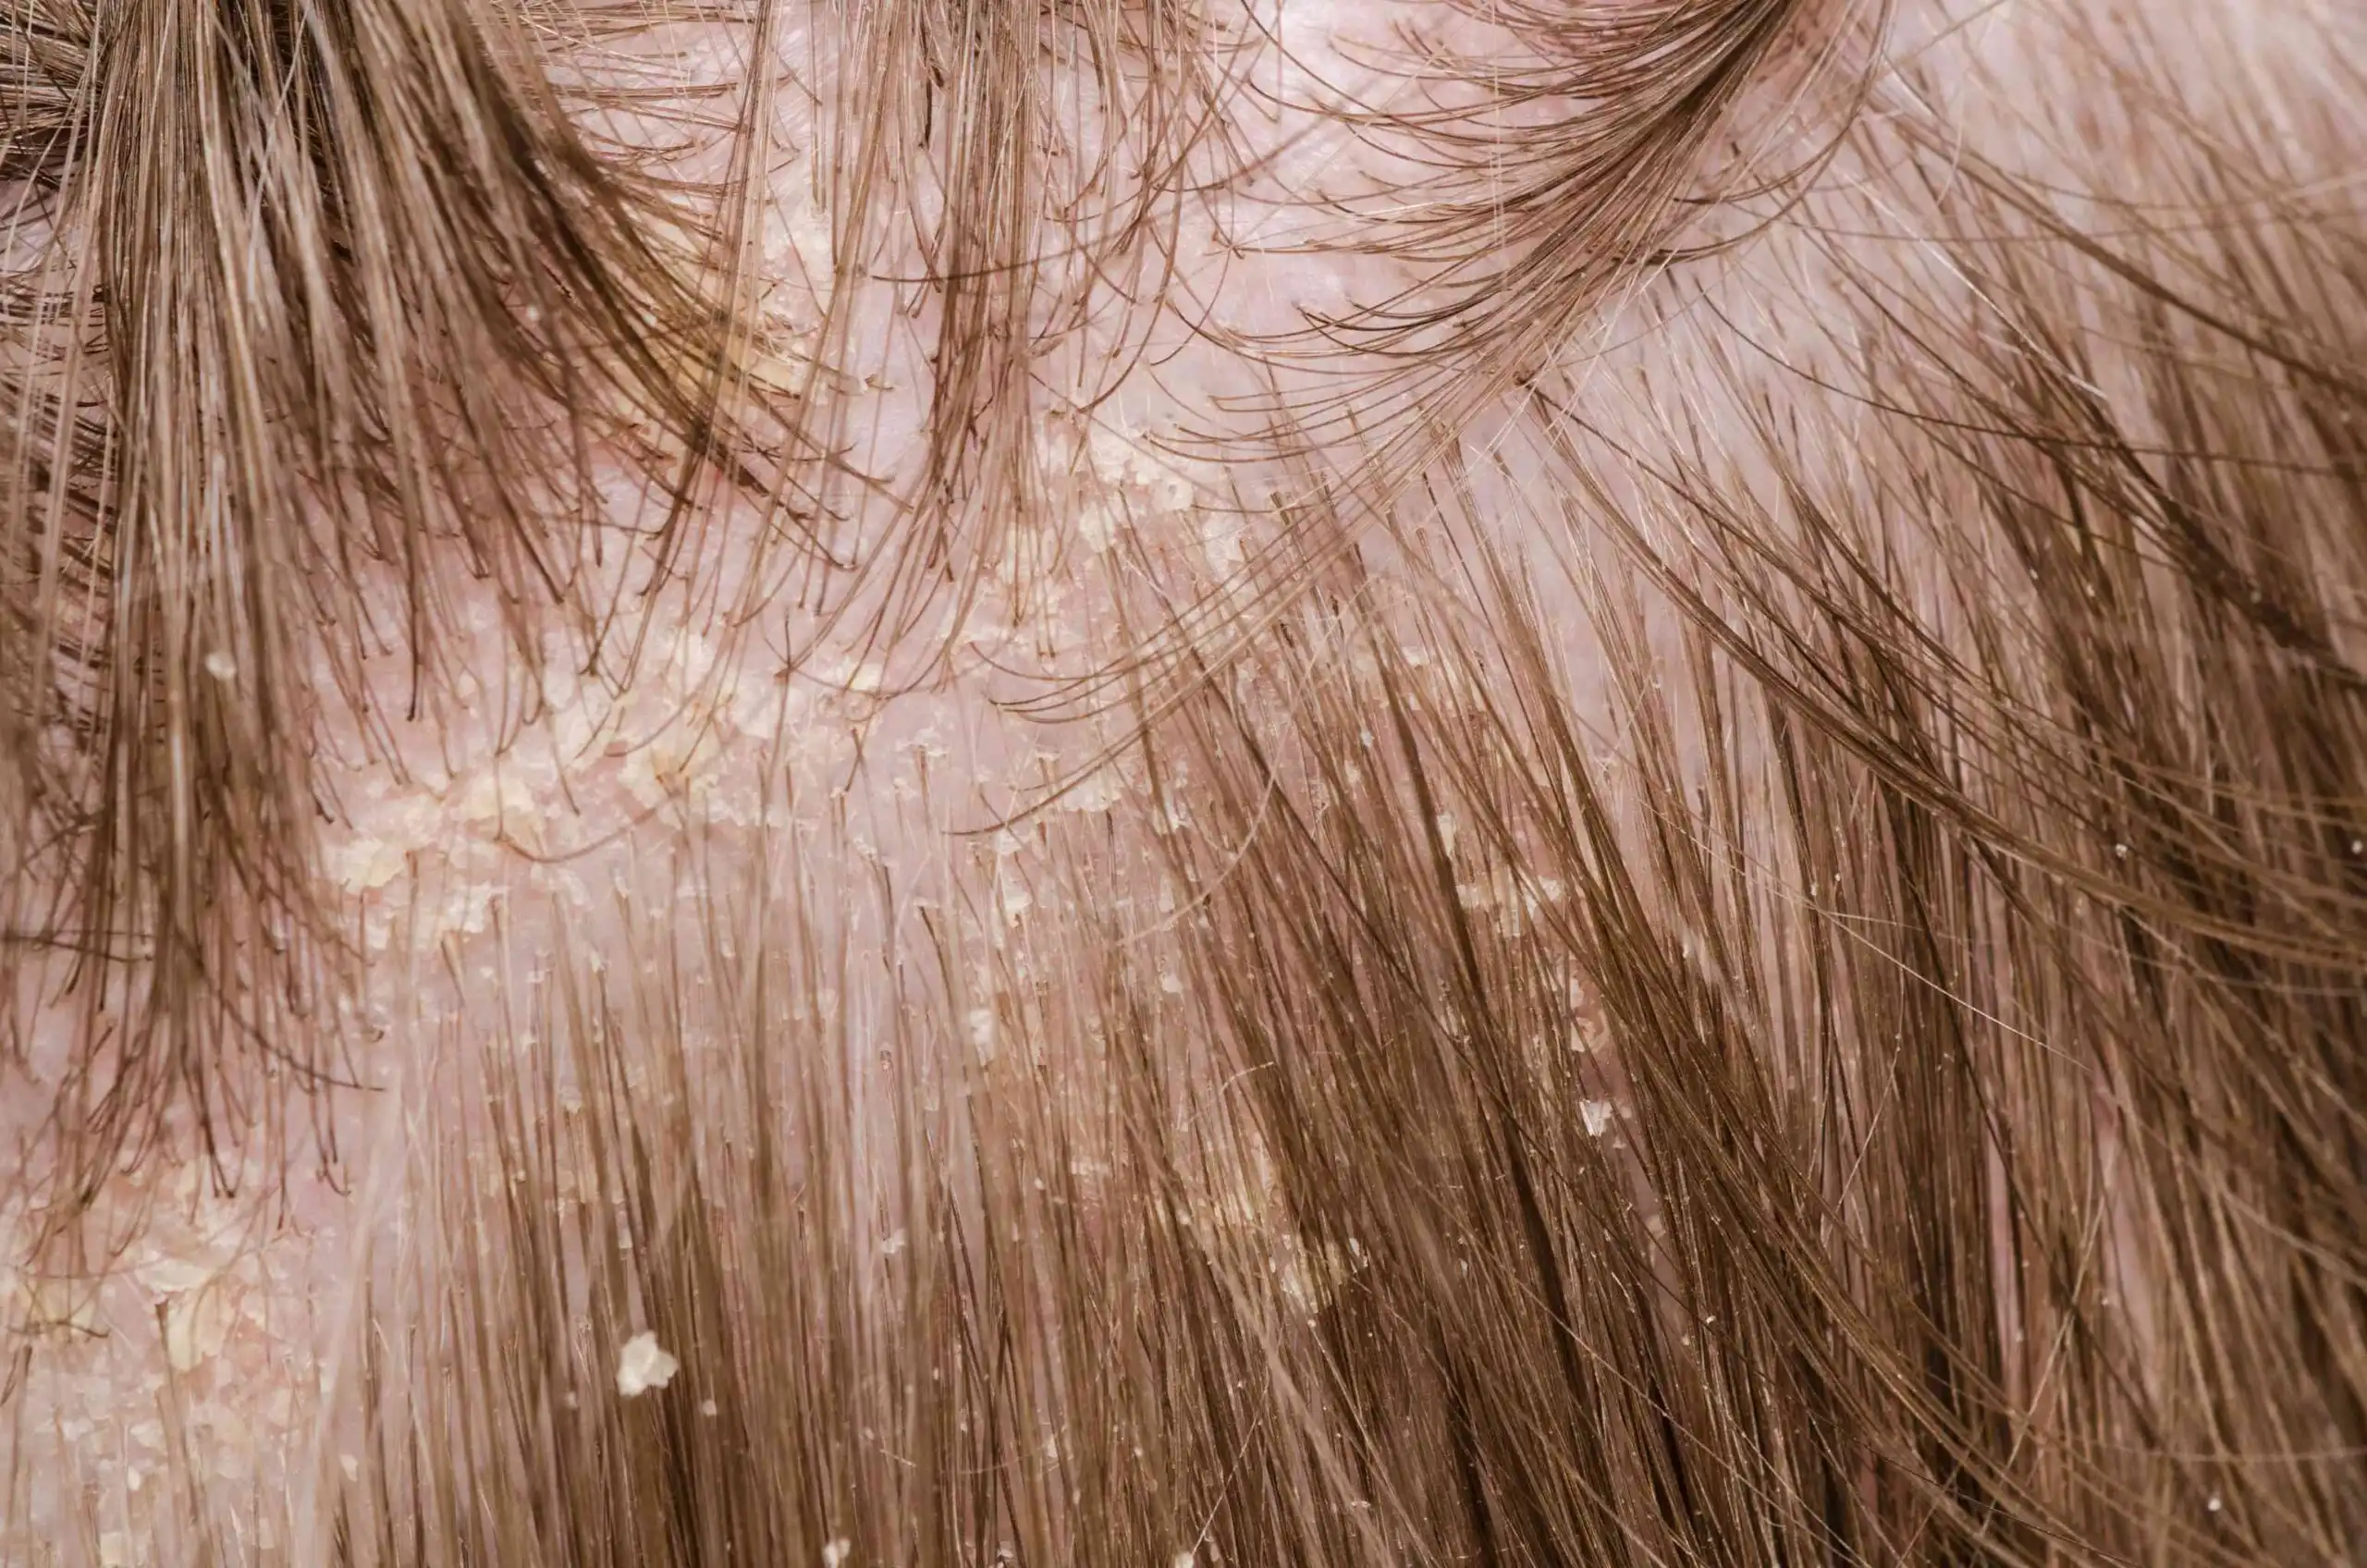 قشرة الرأس احد أمراض فروة الرأس - الشيكة العربية لزراعة الشعر